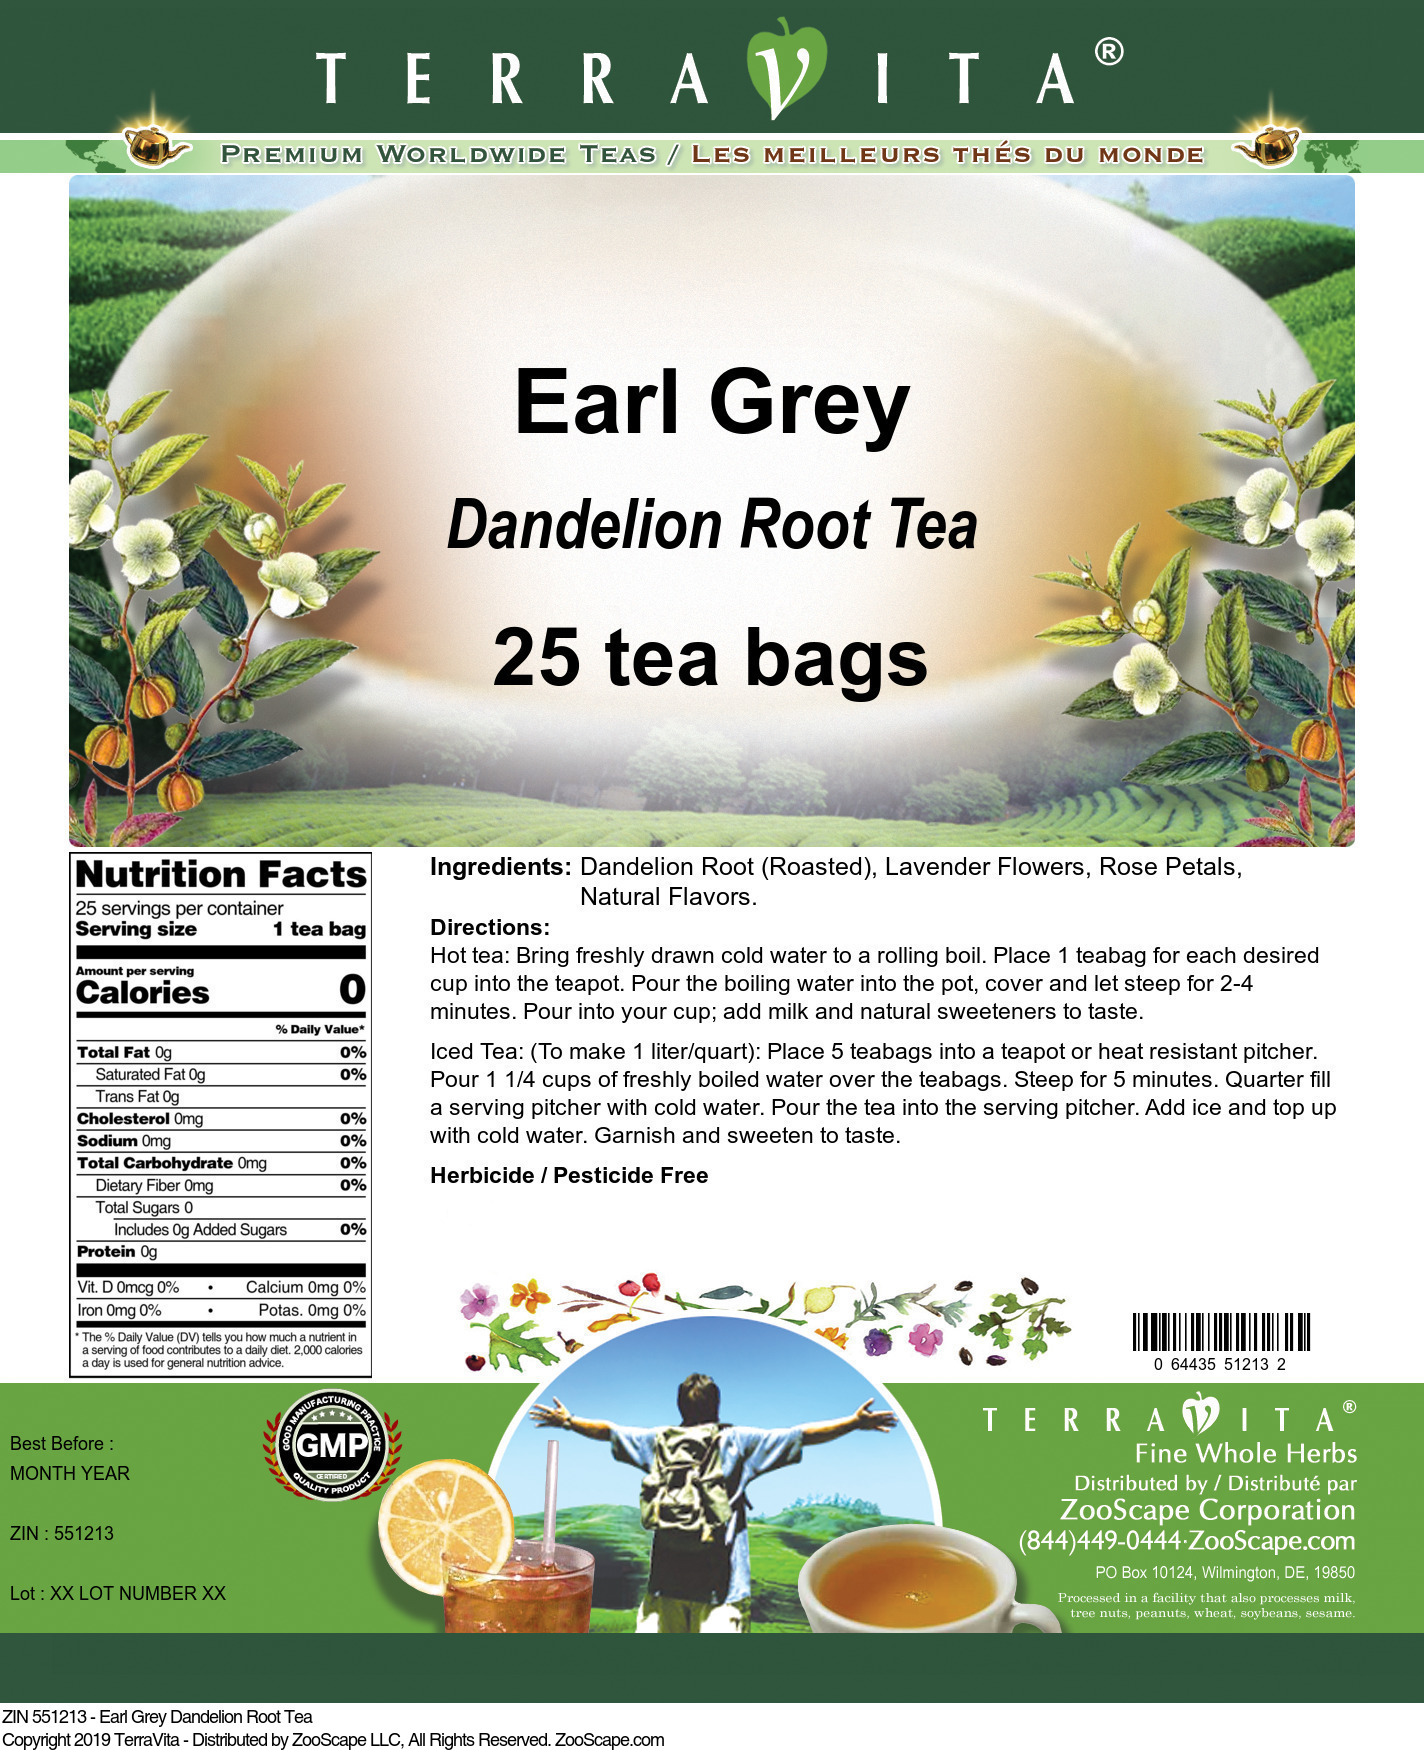 Earl Grey Dandelion Root Tea - Label